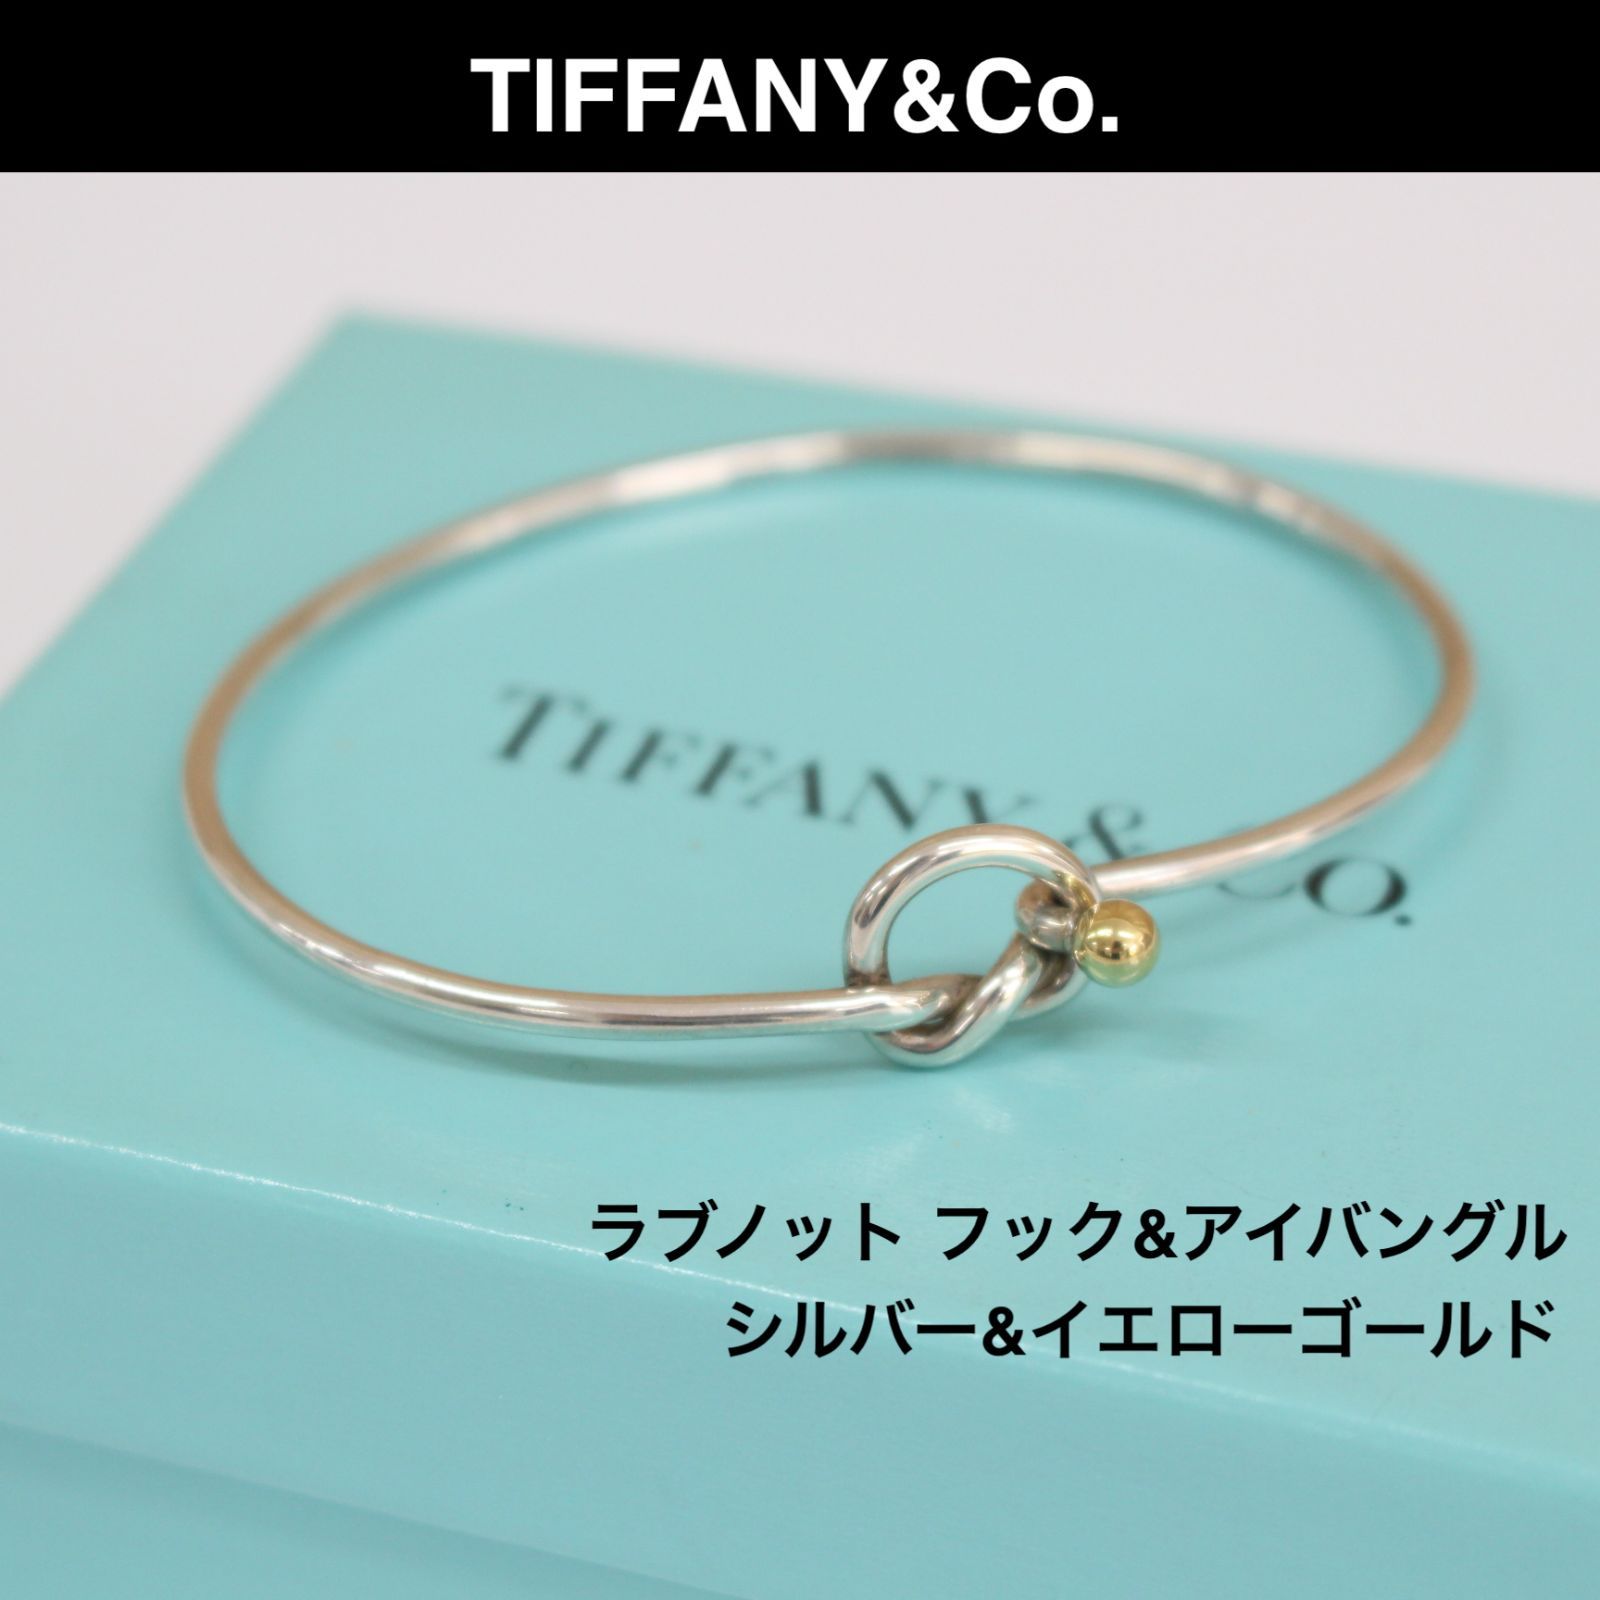 感謝価格 箱付 Tiffany&Co ティファニー ラブノット バングル